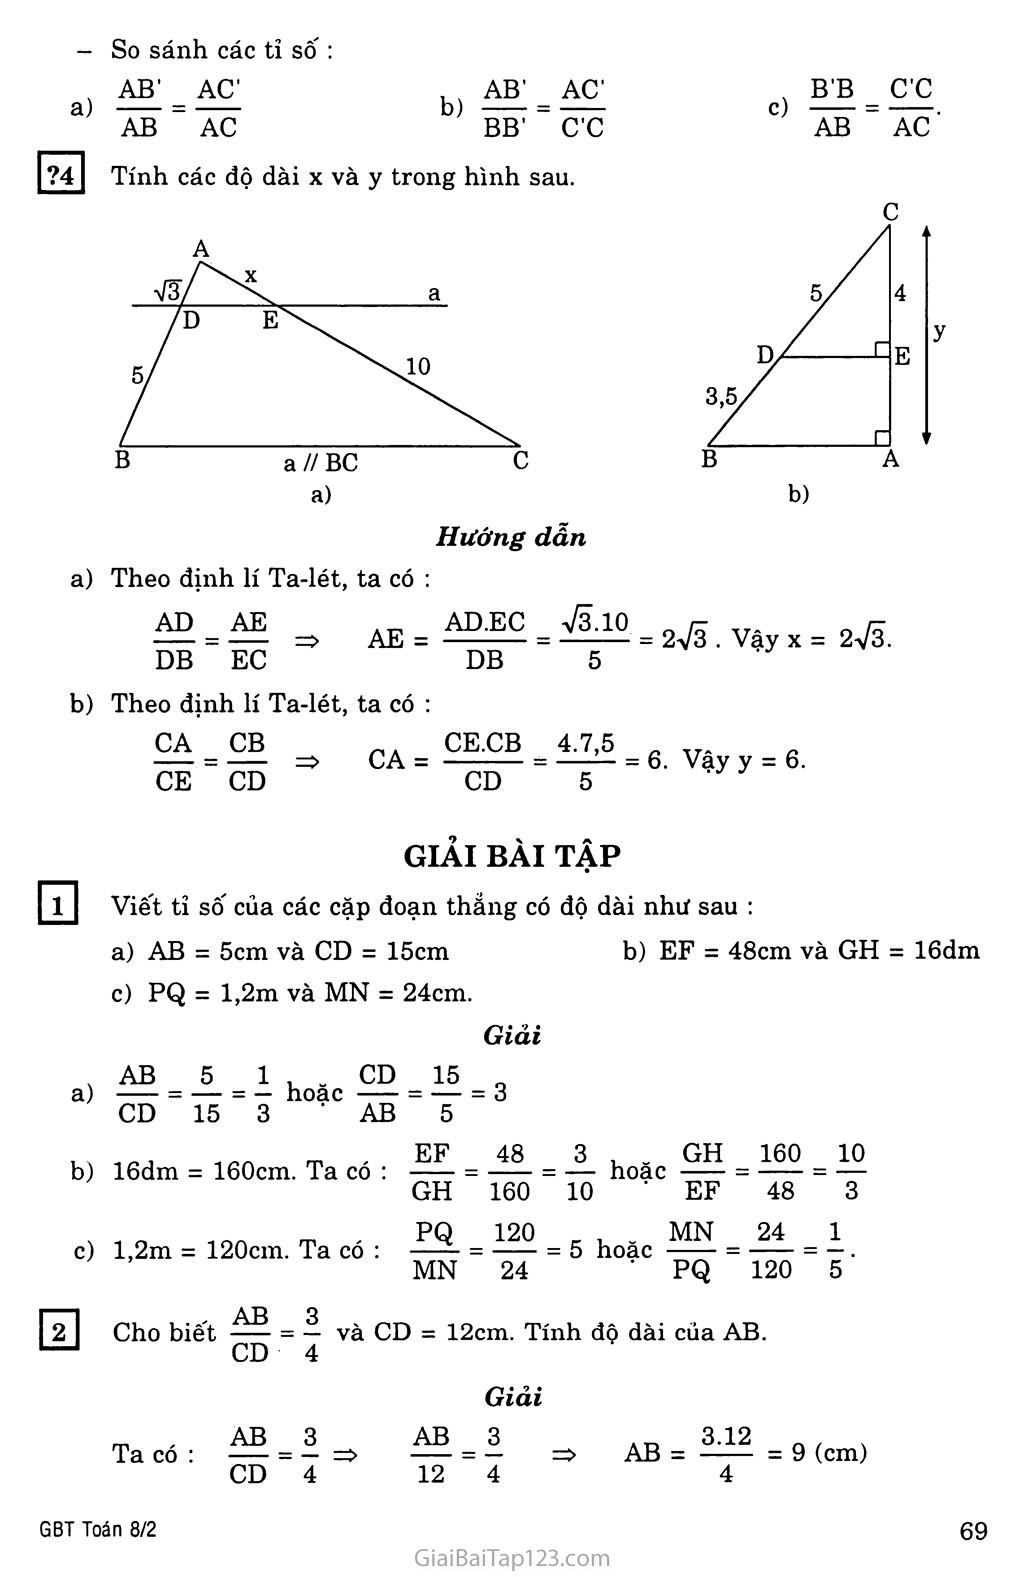 §1. Định lí Ta-lét trong tam giác trang 2